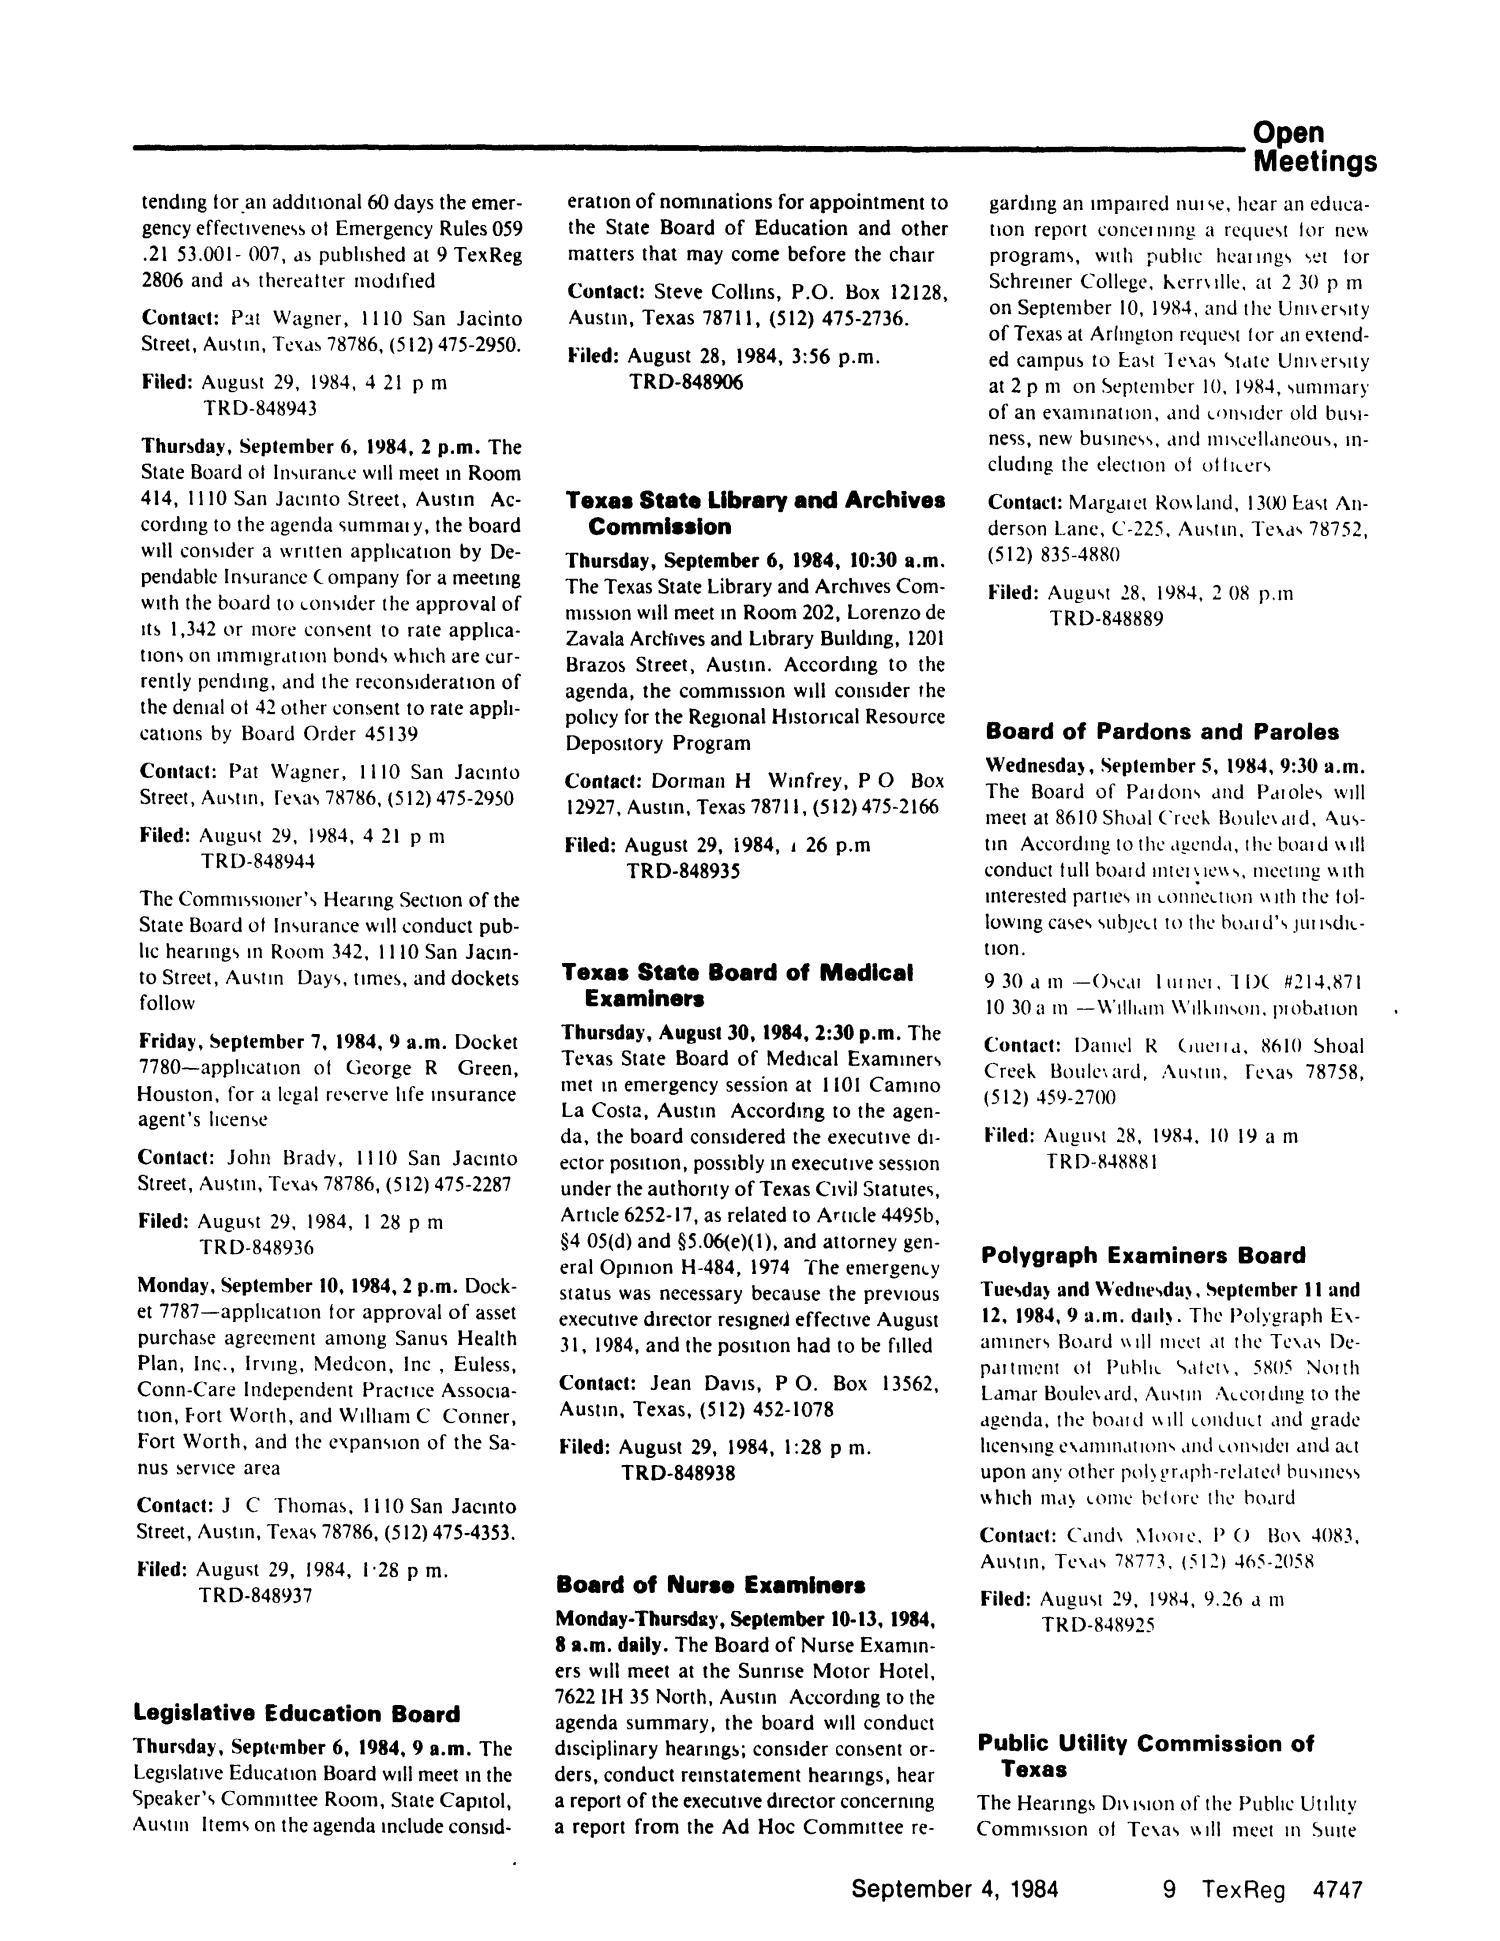 Texas Register, Volume 9, Number 66, Pages 4703-4756, September 4, 1984
                                                
                                                    4747
                                                